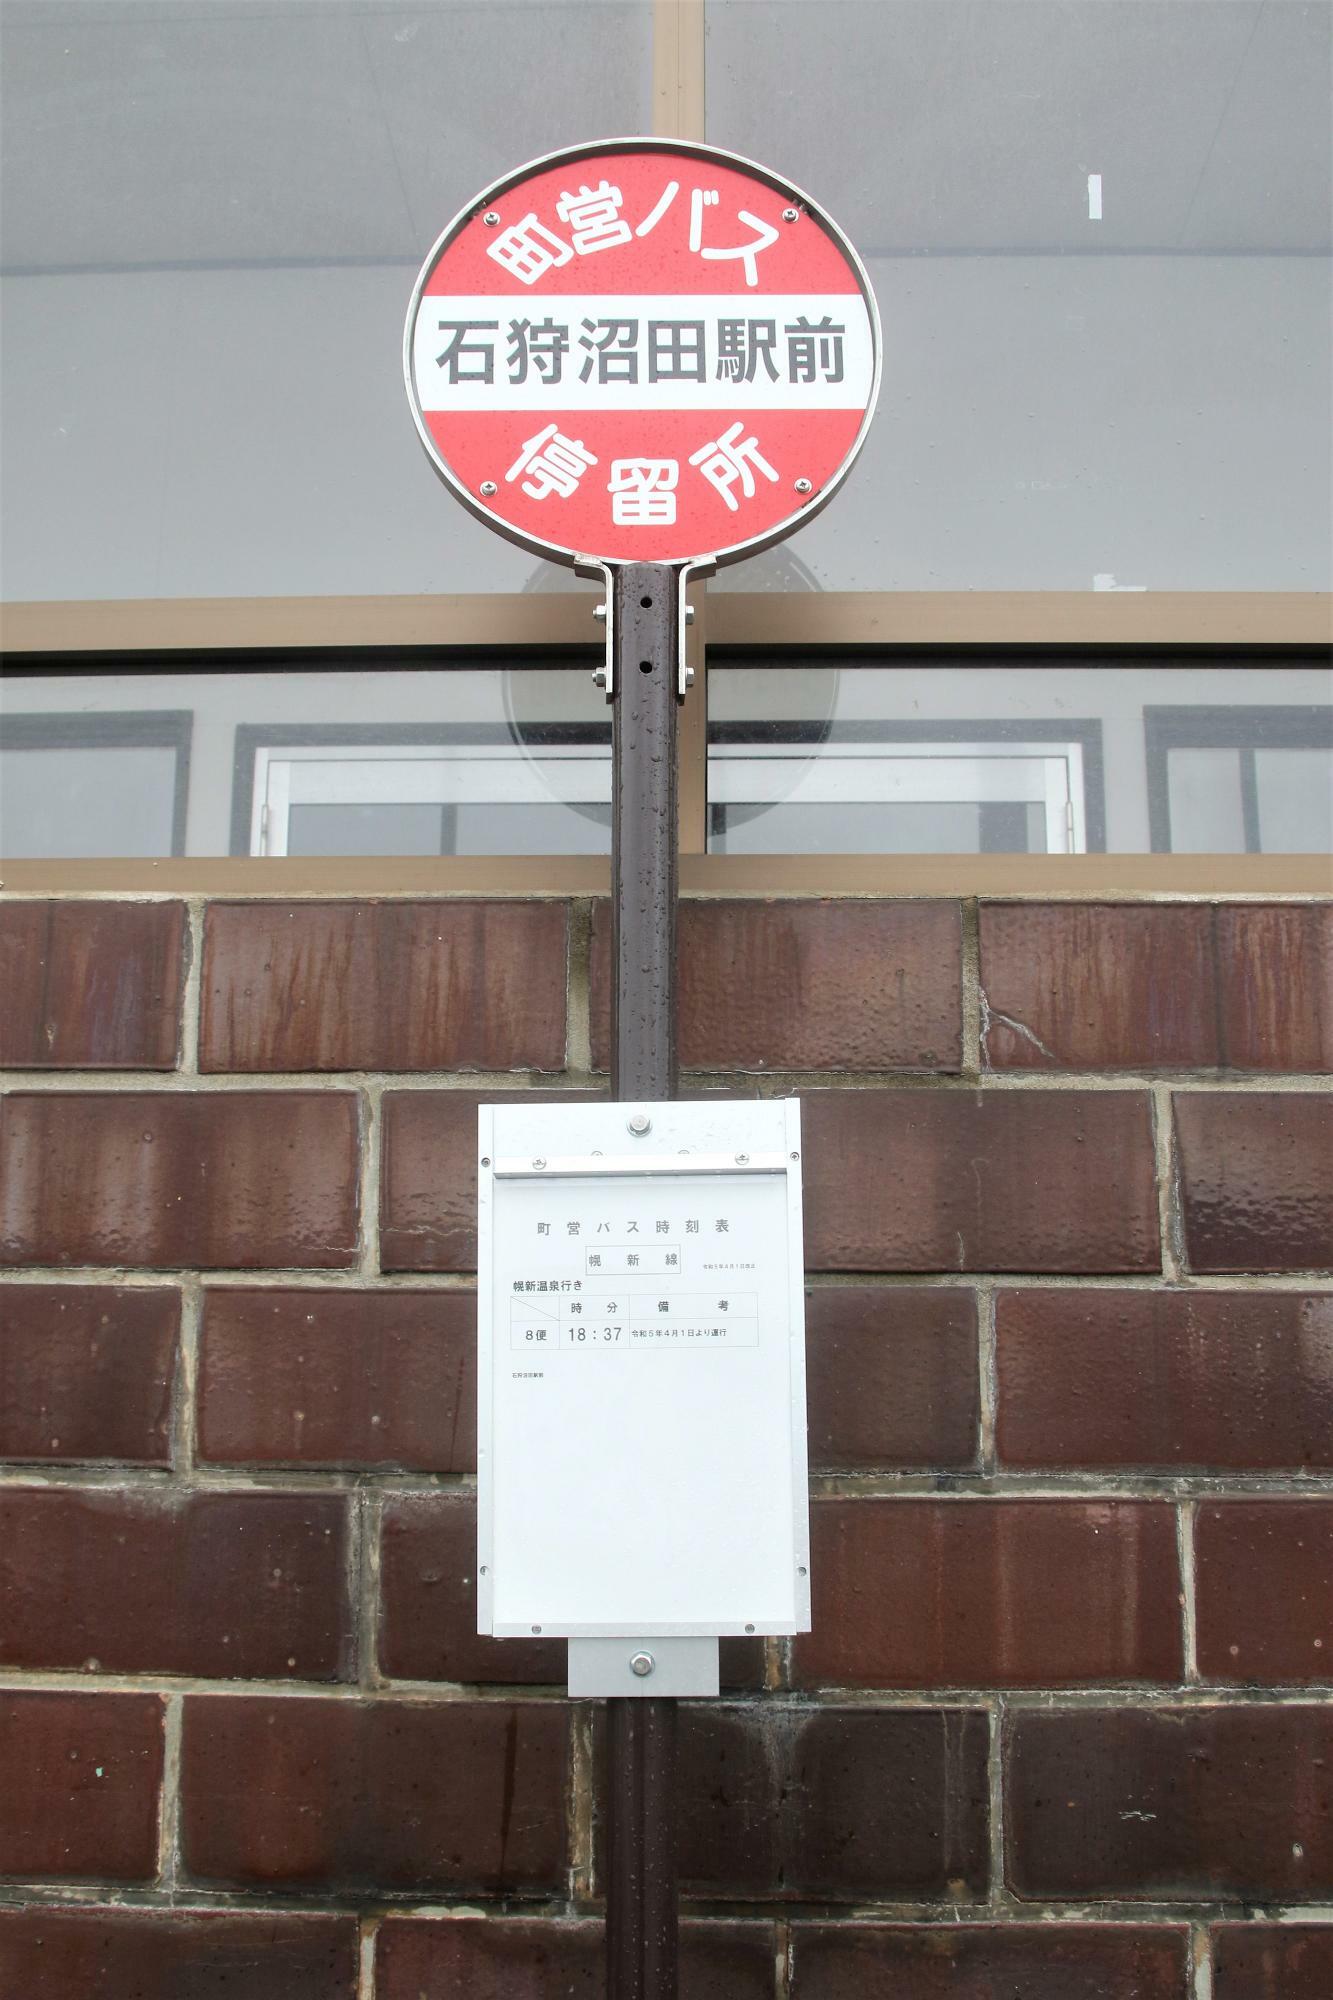 石狩沼田駅にある真布駅跡を経由する町営バス停